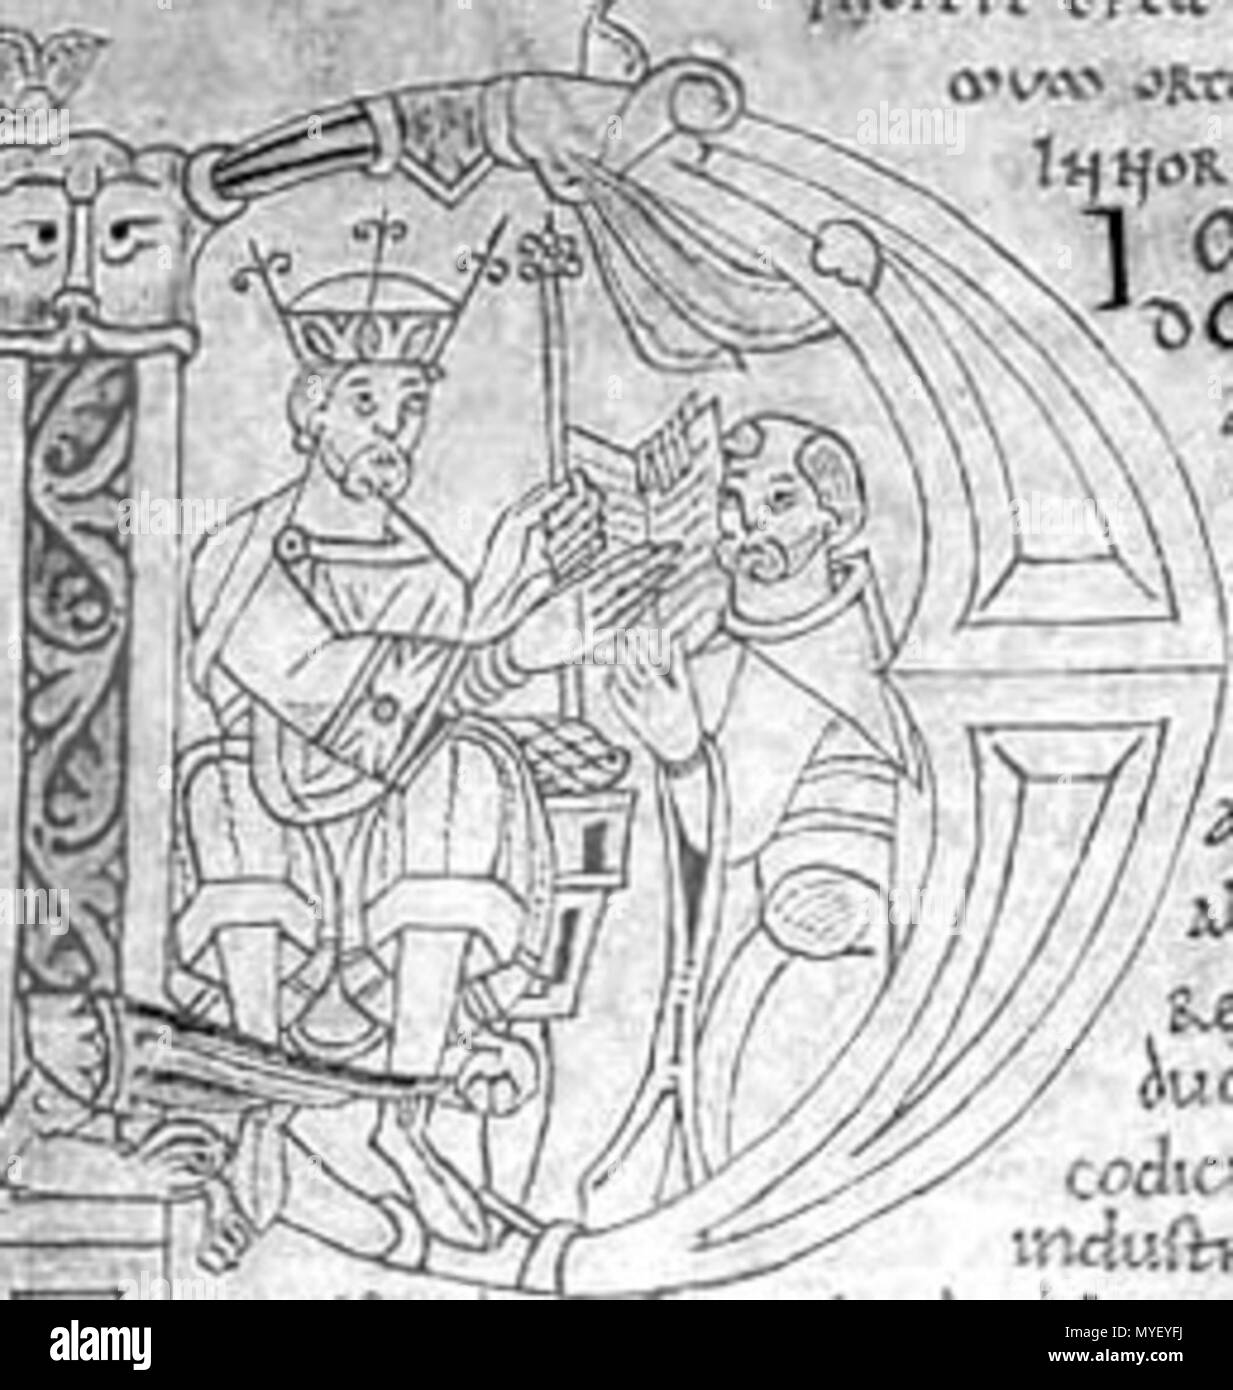 . Lettre majuscule d'un manuscrit présentant Guillaume de Jumièges Gesta Normannorum ducum offrant sa à Guillaume le Conquérant. 1070 s. Unbekannt 222 GuillaumedeJumieges Stockfoto